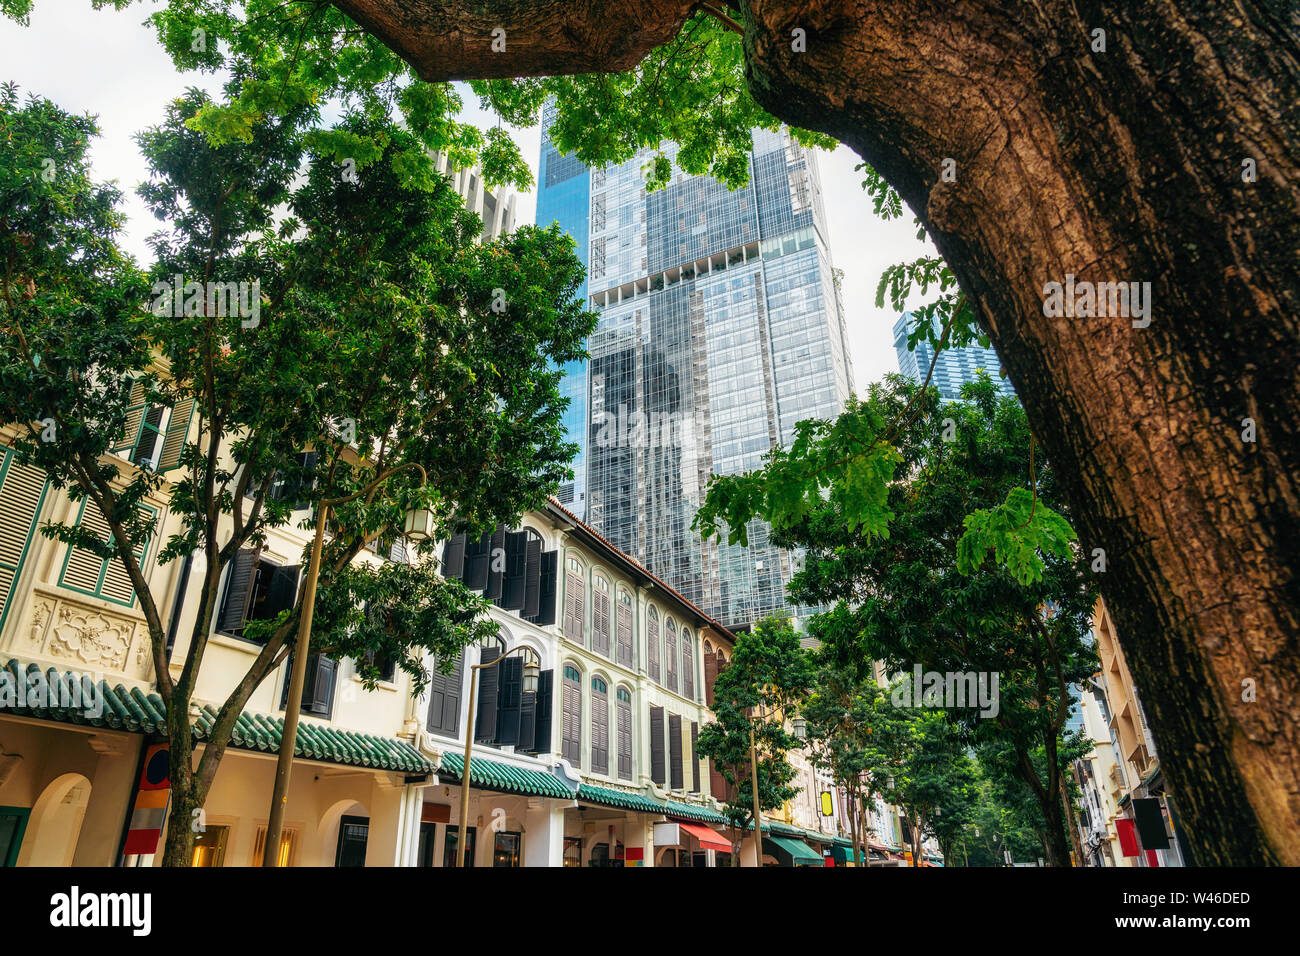 Verde de los árboles en las calles con antiguos edificios coloniales contra la arquitectura moderna de cristal en Singapur. Foto de stock